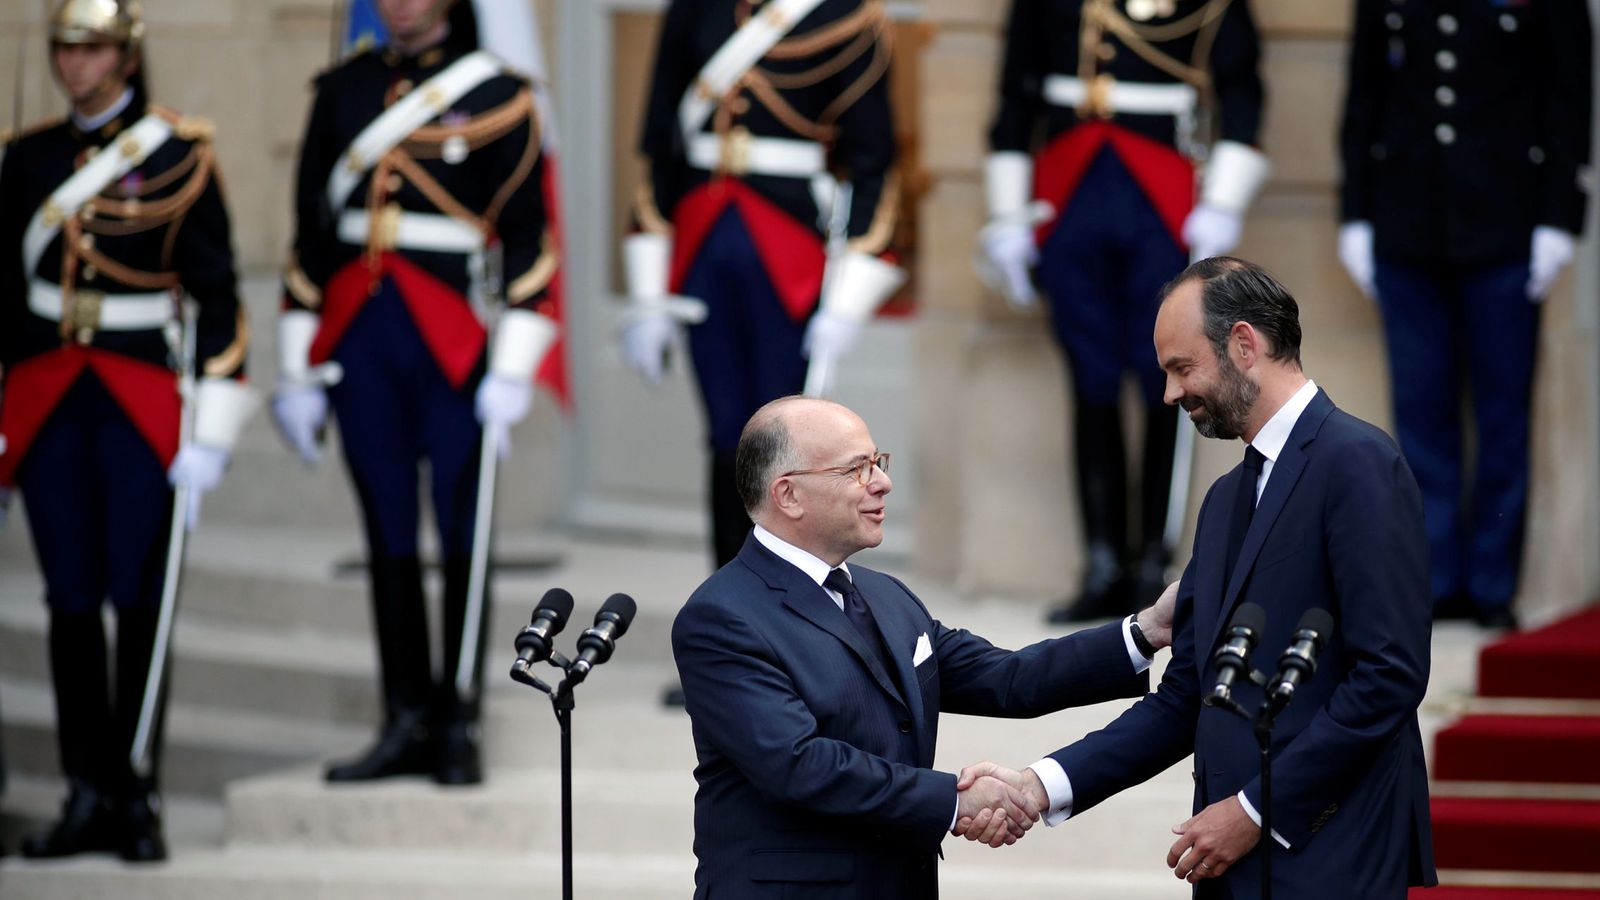 Foto: El recién nombrado primer ministro francés Edouard Philippe (i) y su predecesor Bernard Cazeneuve (d) asisten a una ceremonia de entrega en París. (Foto: Reuters)